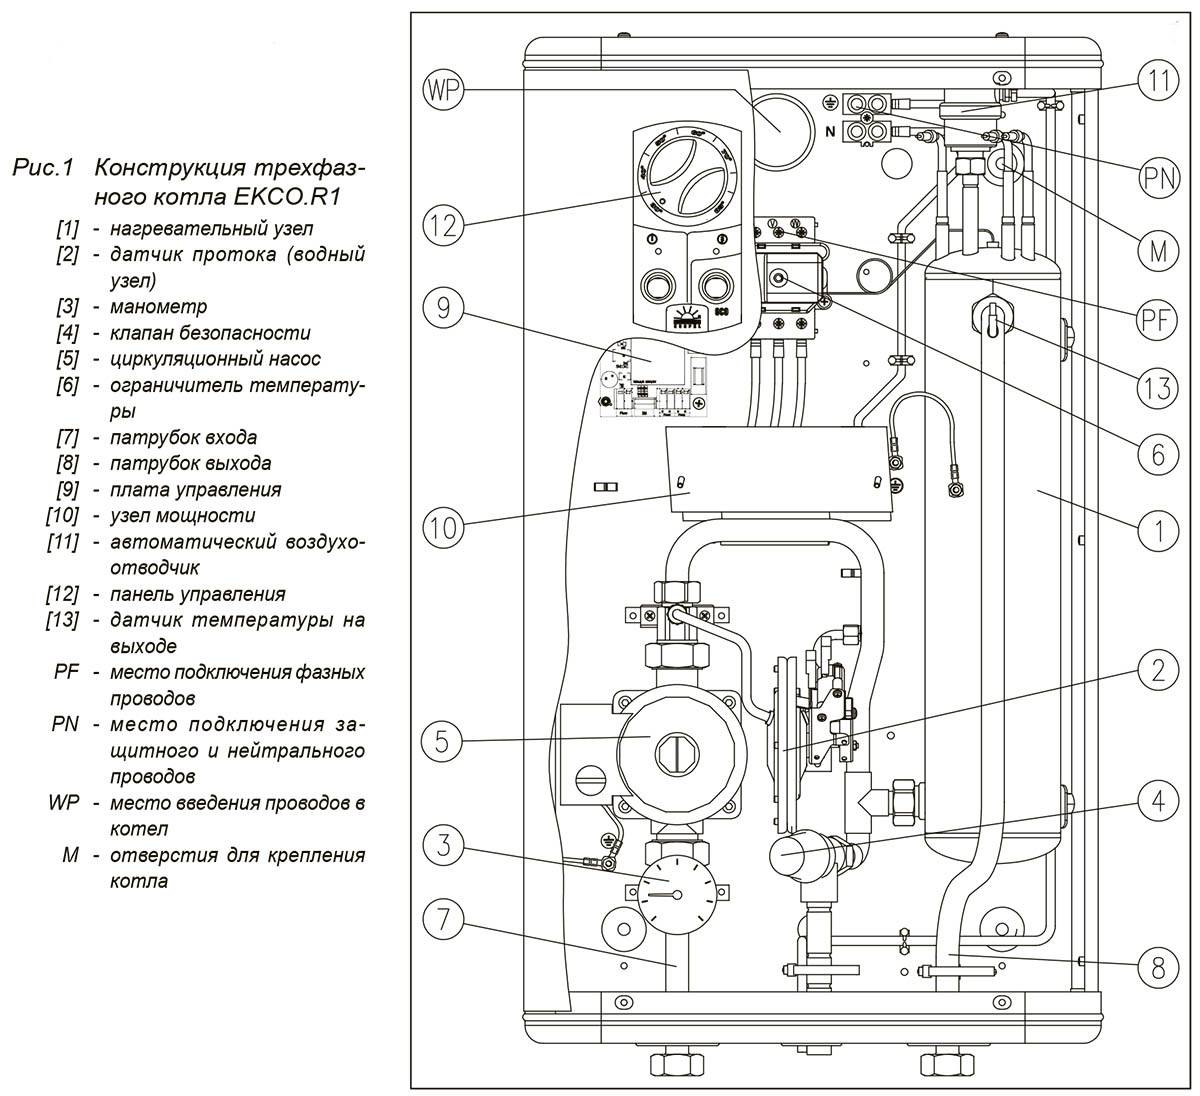 Котел электрический коспел инструкция – инструкции на котел электрический отопительный kospel бренда kospel - теплоэнергоремонт